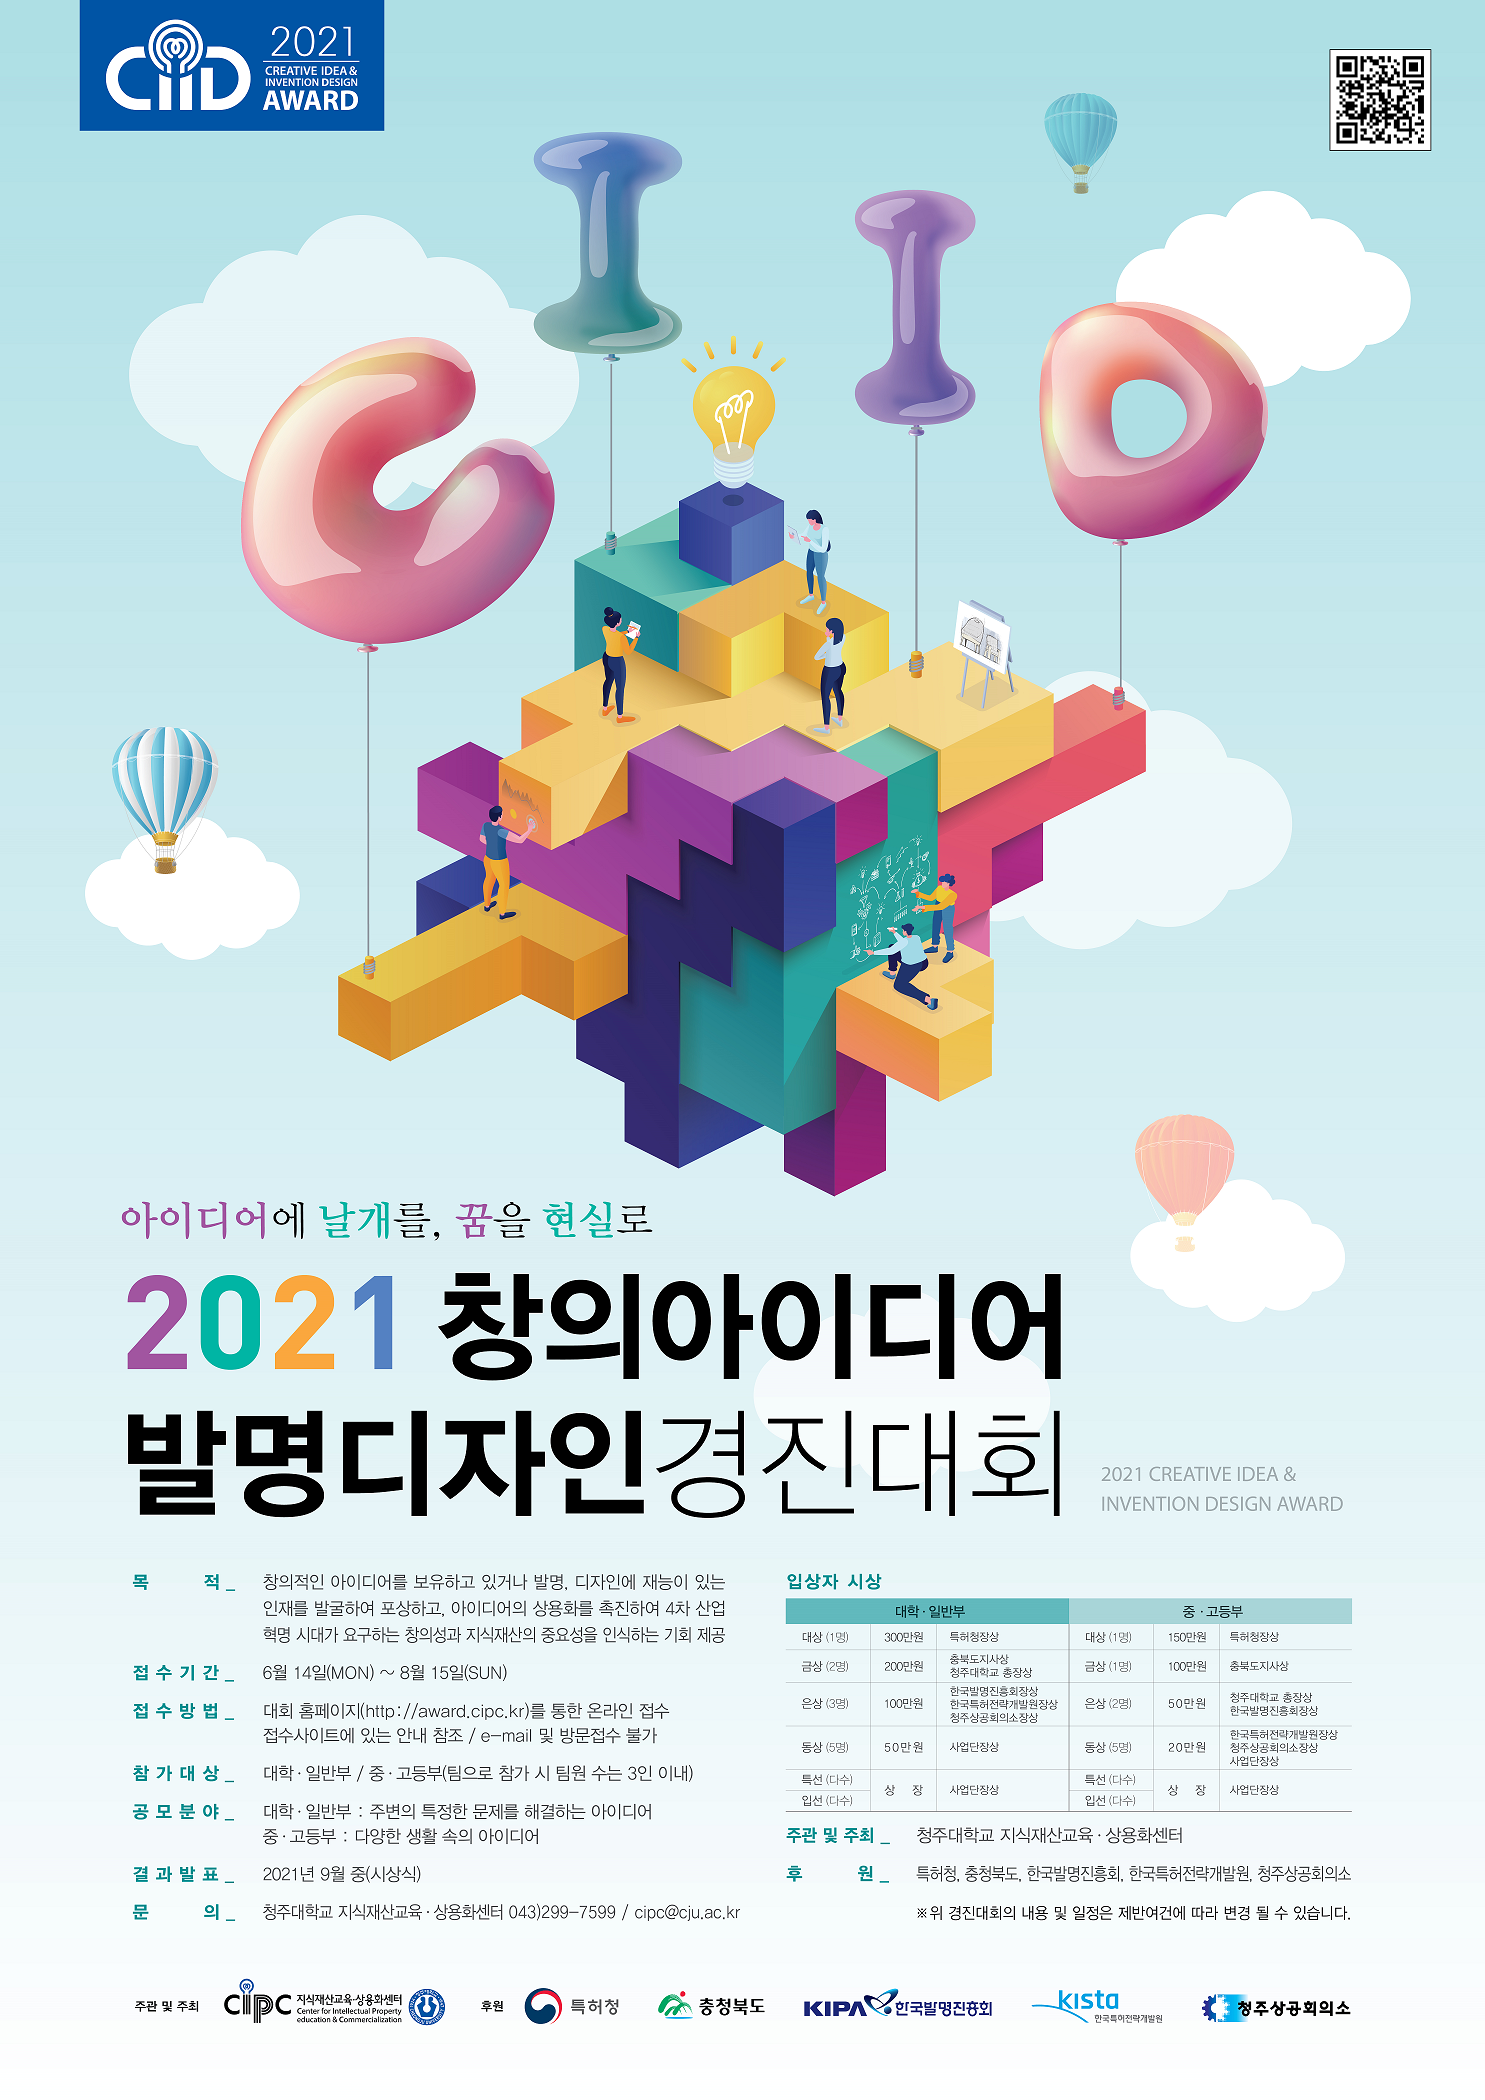 2021창의아이디어&발명경진대회 포스터(1) - 복사본.png